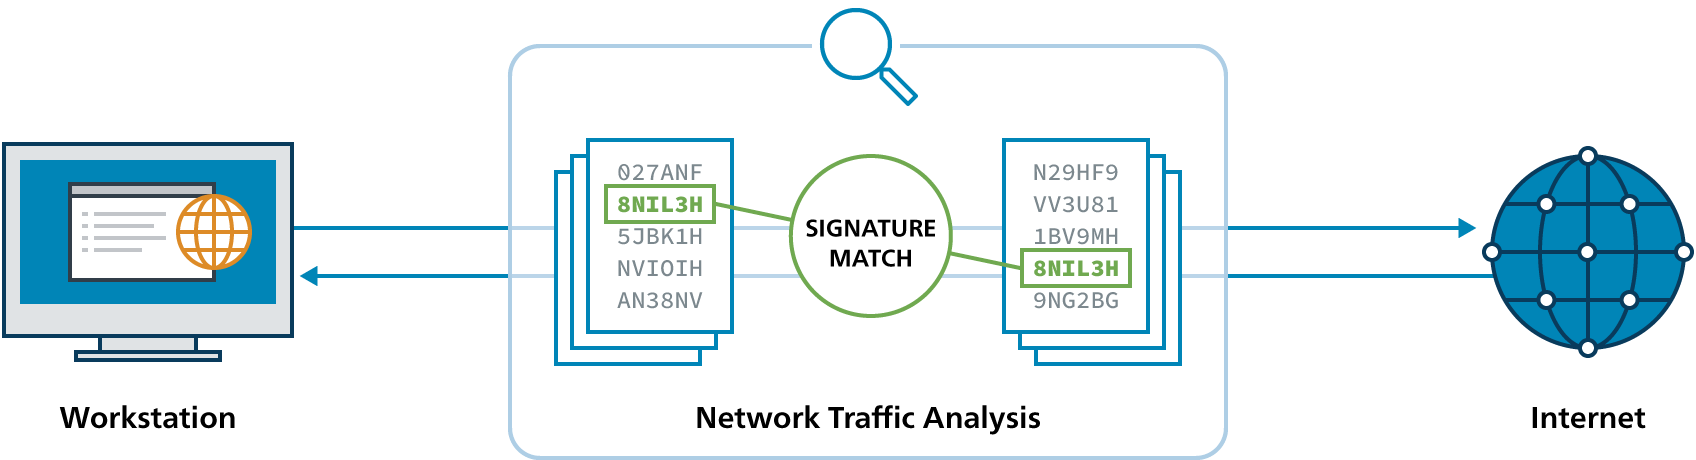 Albert-Network-Trafic-Analysis